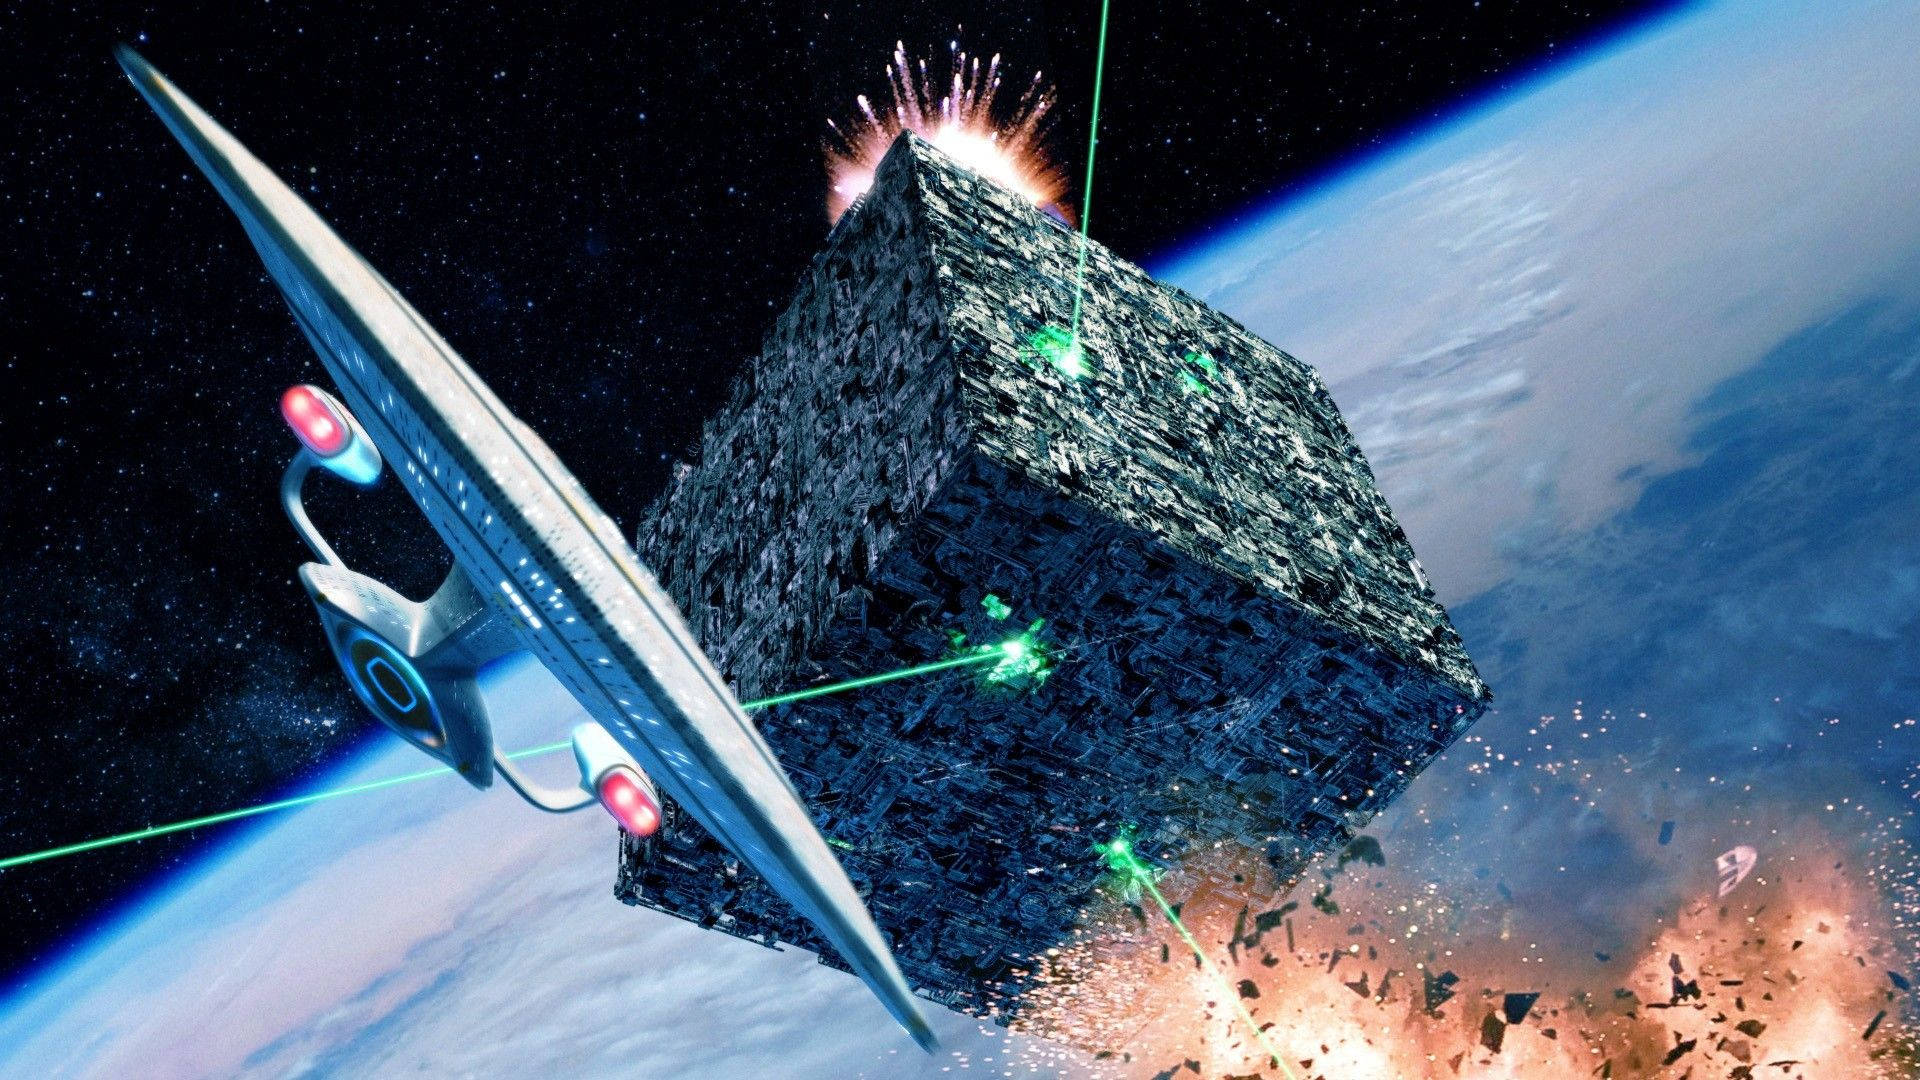 Space Star Trek Battle Background